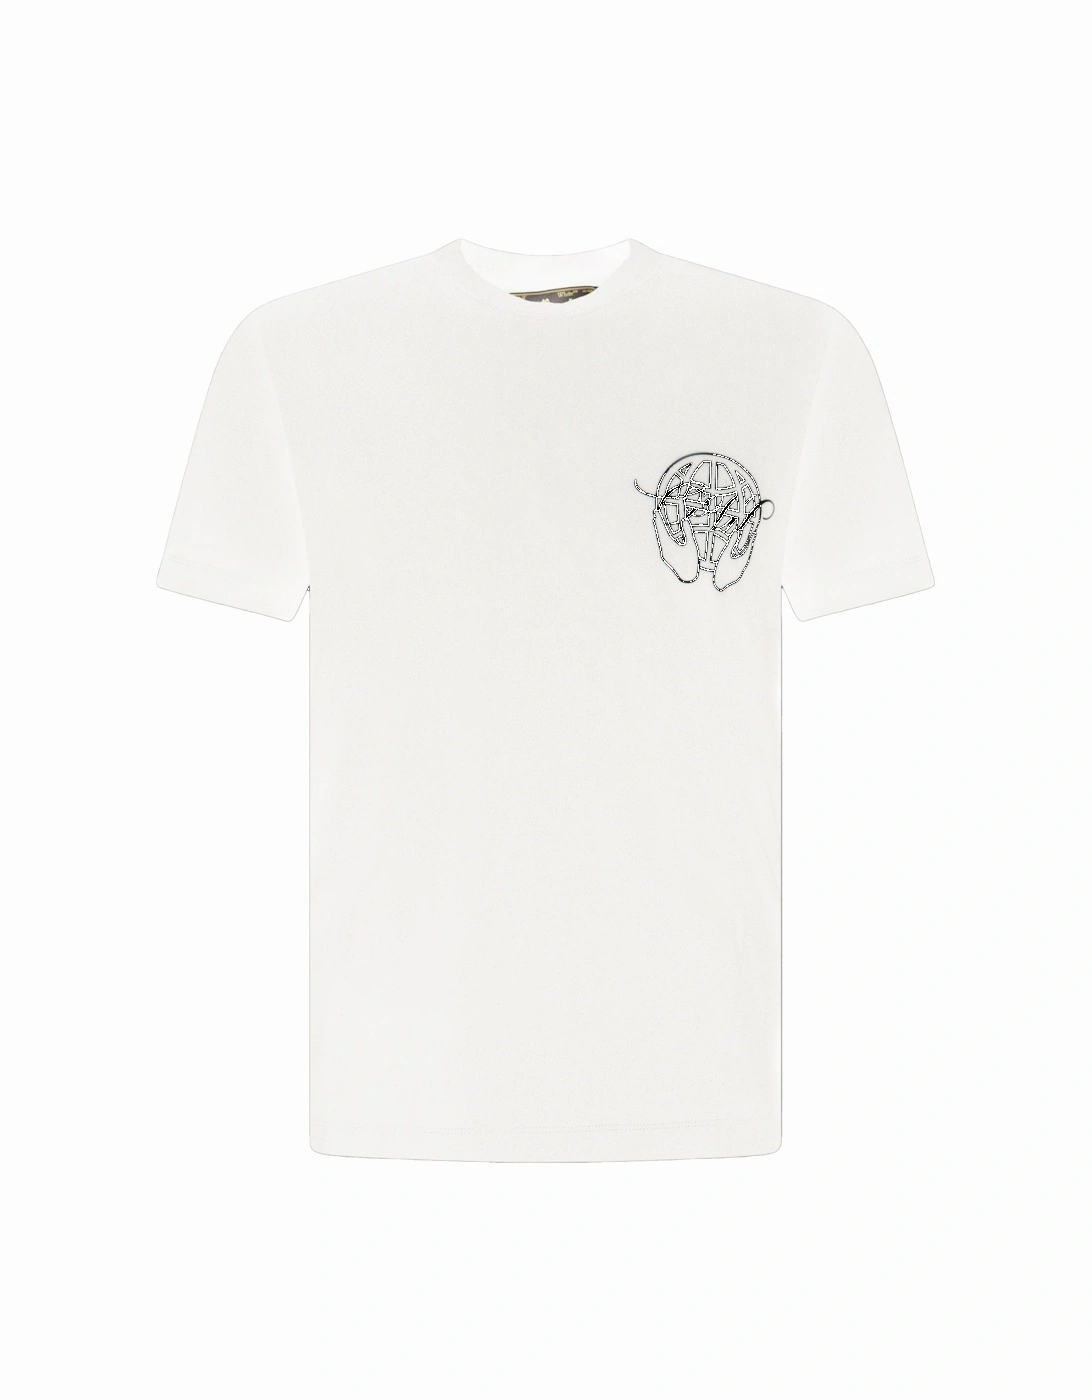 Hand Arrow Design T-shirt White